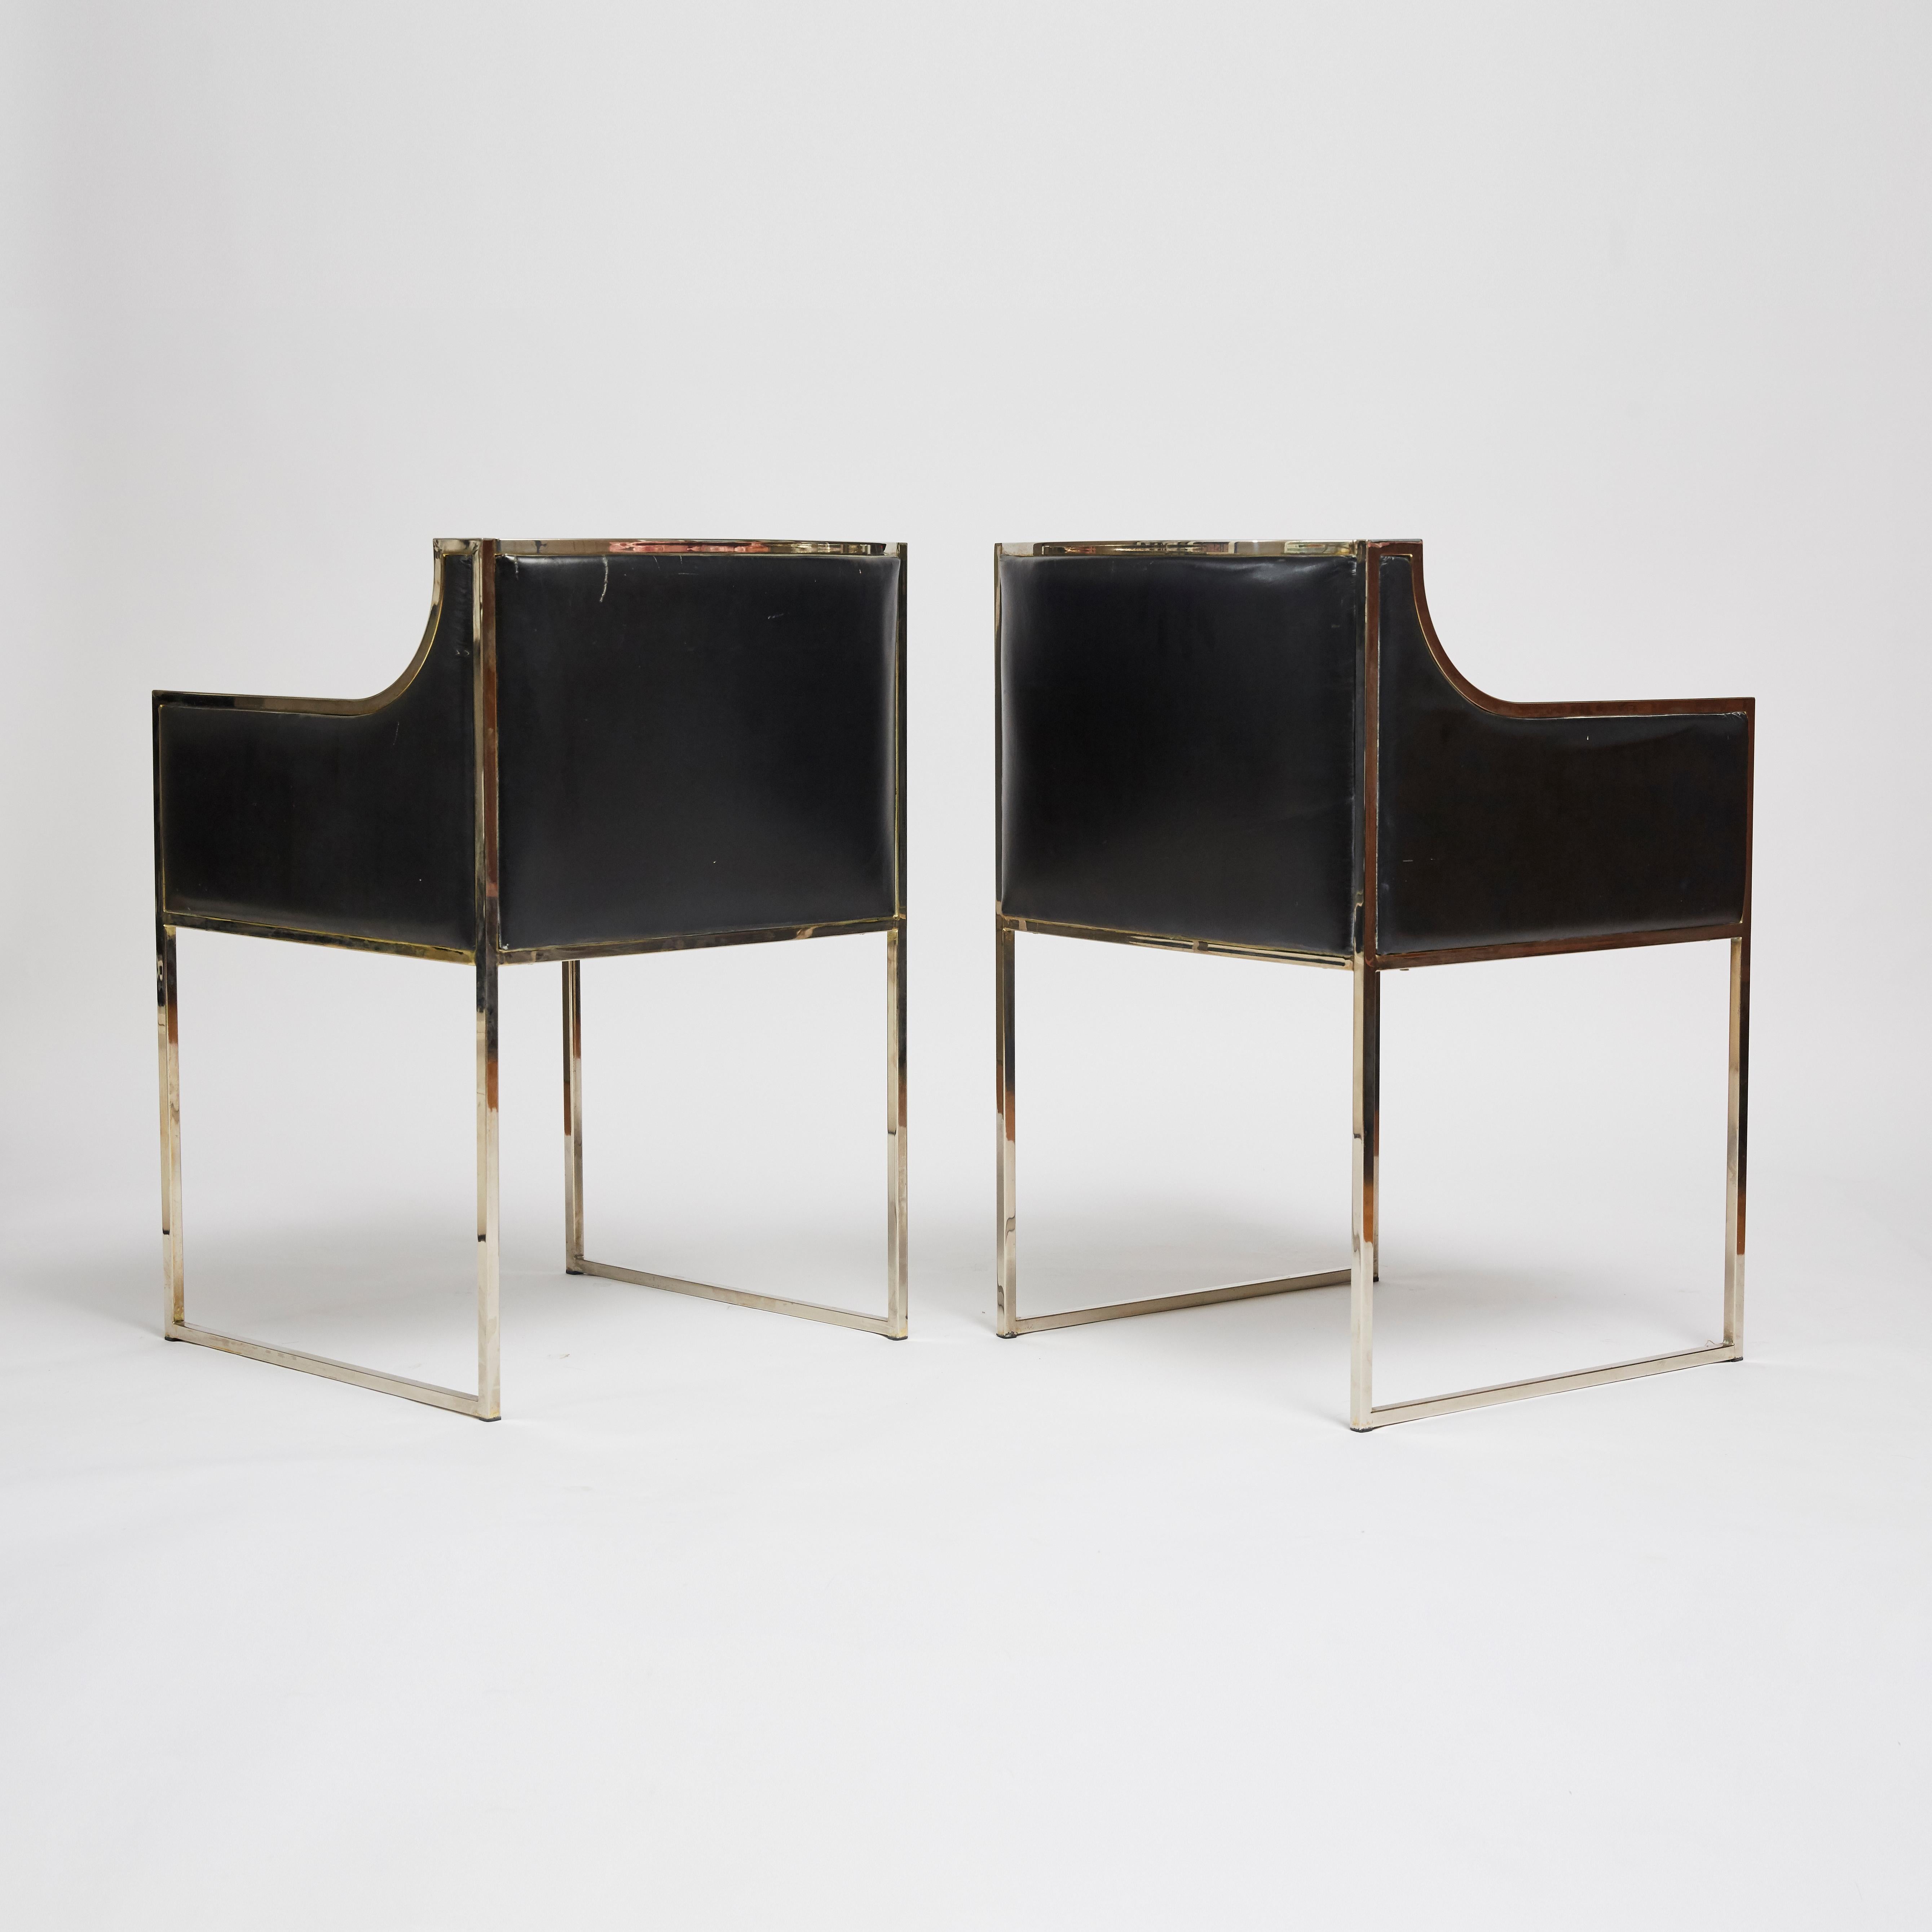 Paire de fauteuils italiens des années 1970 avec structure chromée et revêtement en cuir noir d'origine, attribués à Willy Rizzo. Le cadre chromé présente quelques marques et le revêtement en cuir présente des marques et une décoloration